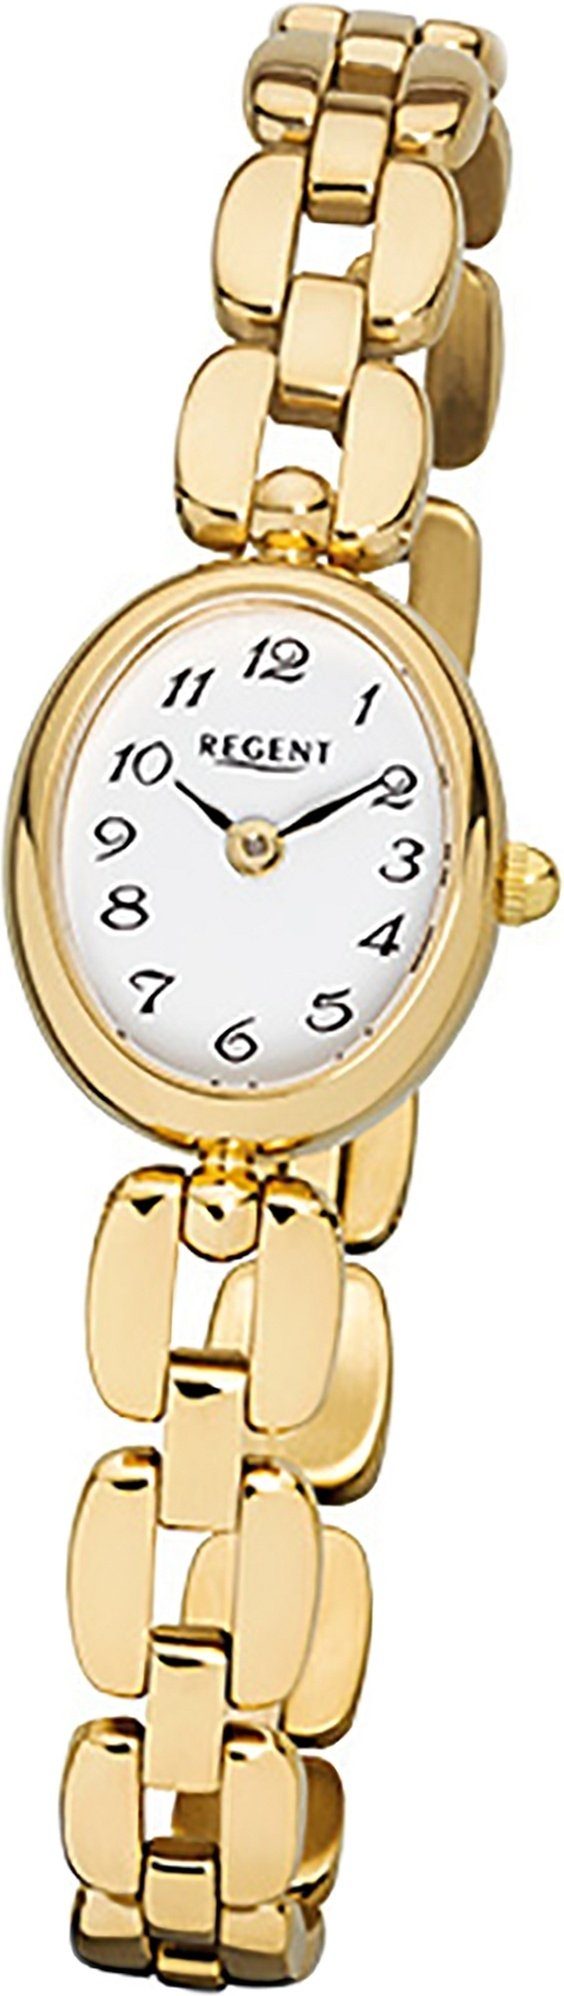 Stahl Regent kl ionenplattiert Damen ovales Uhr Gehäuse, Edelstahl, goldarmband, Quarzuhr mit Regent Quarzuhr, F-968 Damenuhr